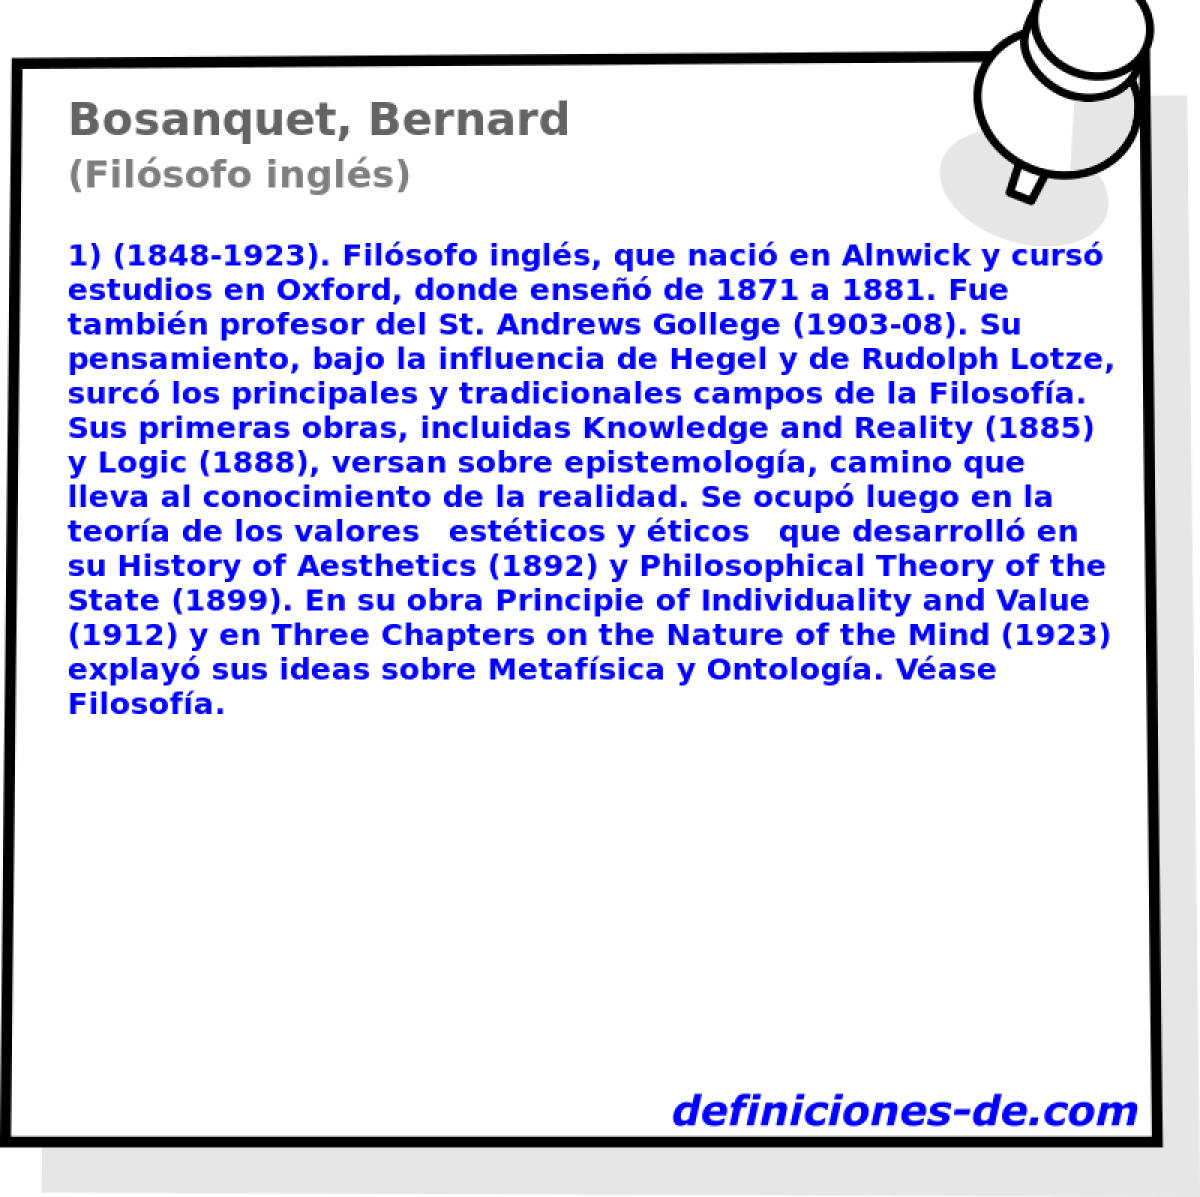 Bosanquet, Bernard (Filsofo ingls)